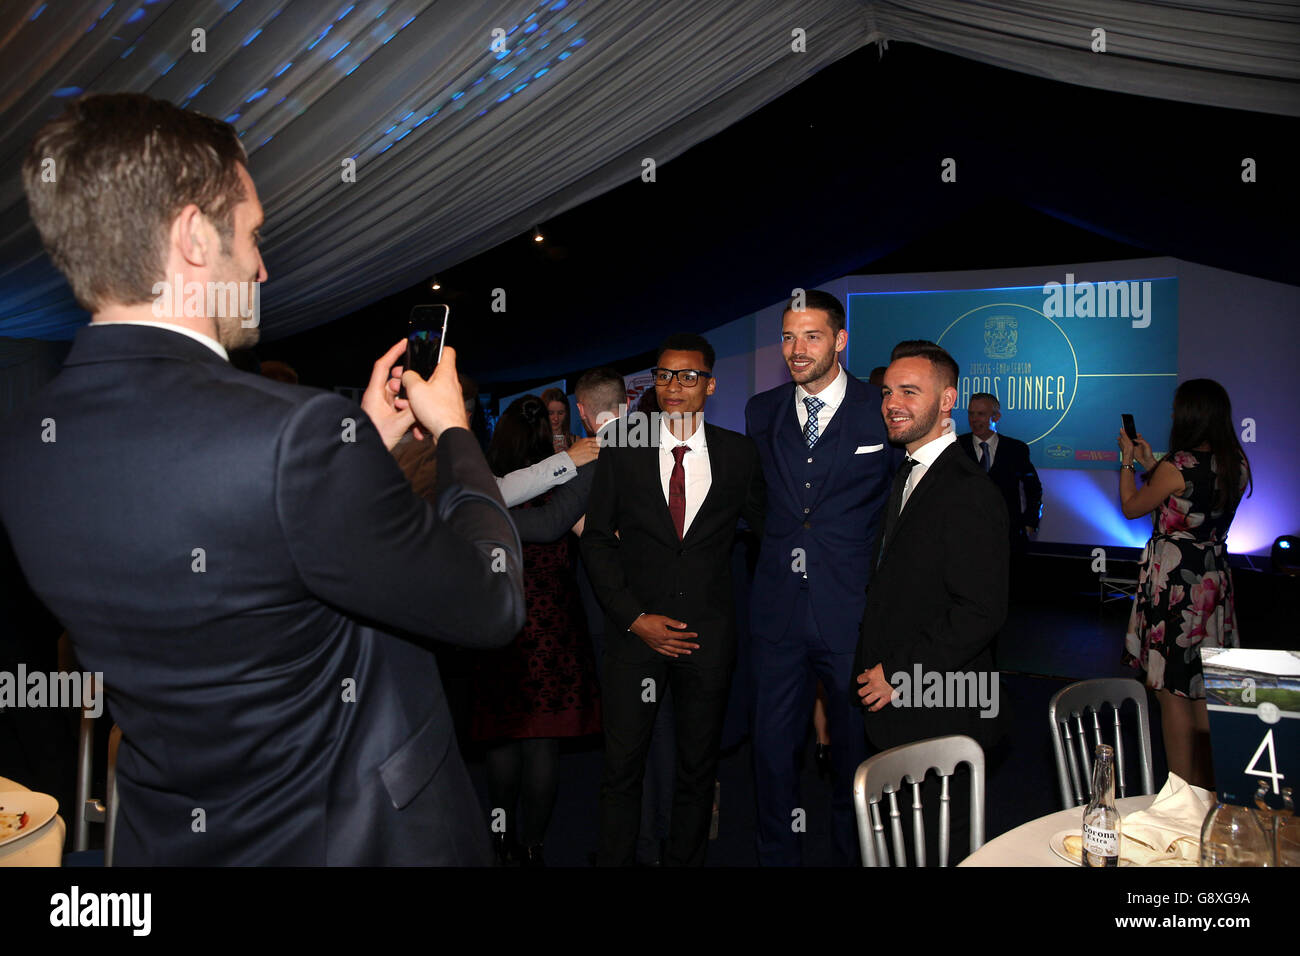 Sam Ricketts di Coventry City scatta una foto dei compagni di squadra Jacob Murphy, Aaron Martin e Adam Armstrong (da sinistra a destra) durante la serata di premi di fine stagione Foto Stock